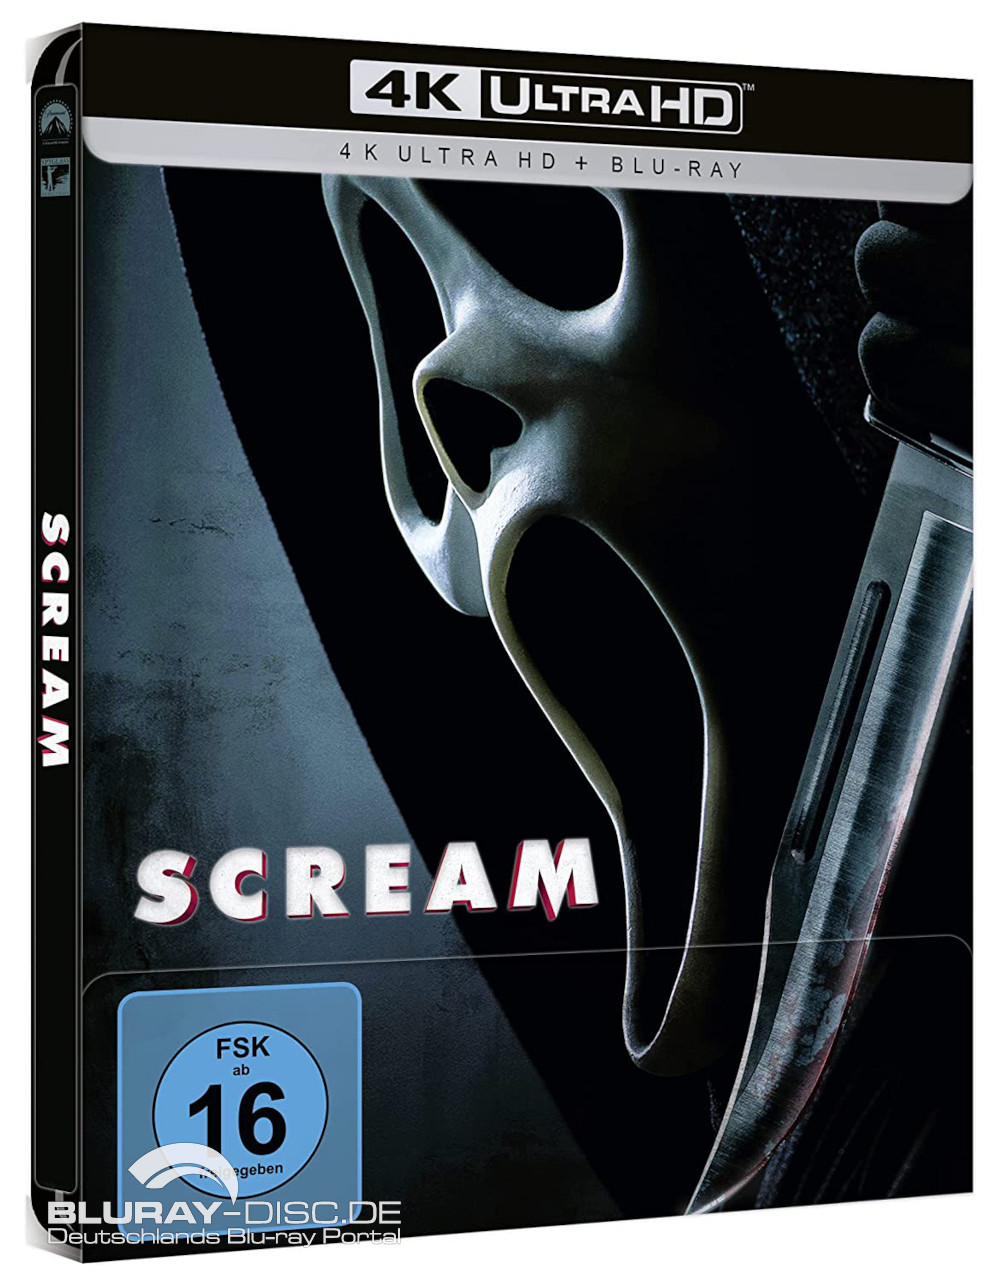 Scream-2022-4K-Steelbook-Galerie-01.jpg